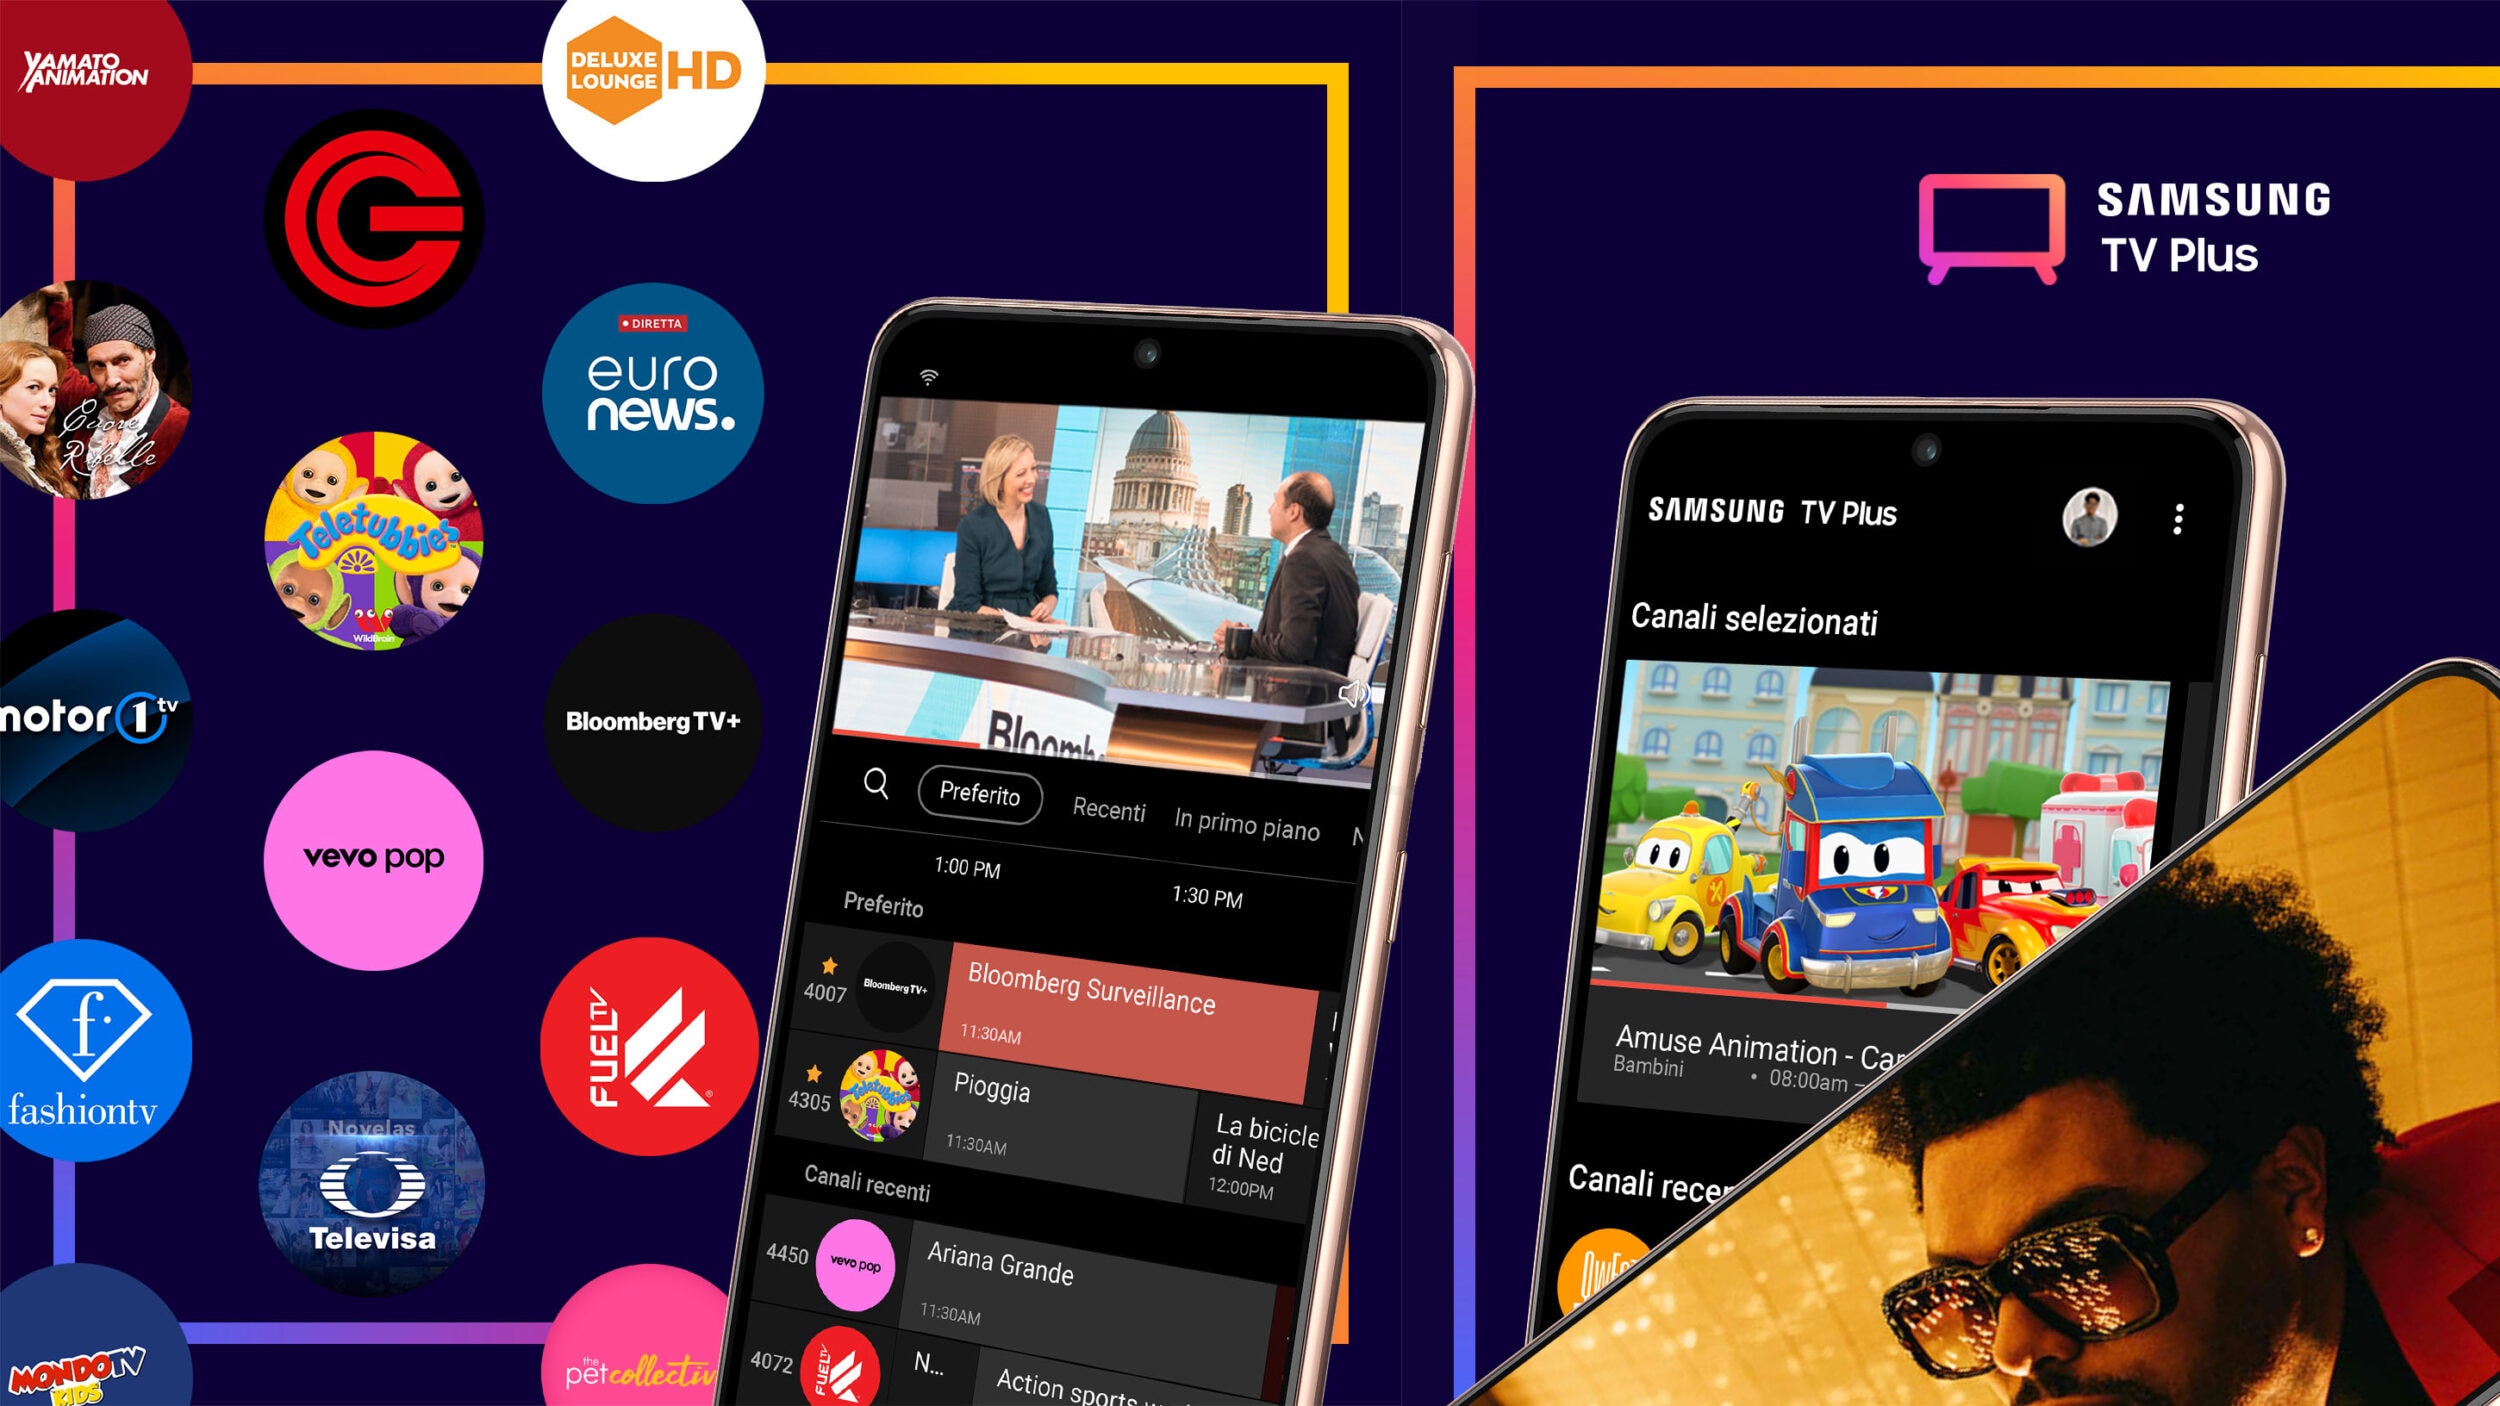 Samsung TV Plus arriva su smartphone: 46 canali gratuiti live, pronti da guardare (foto)